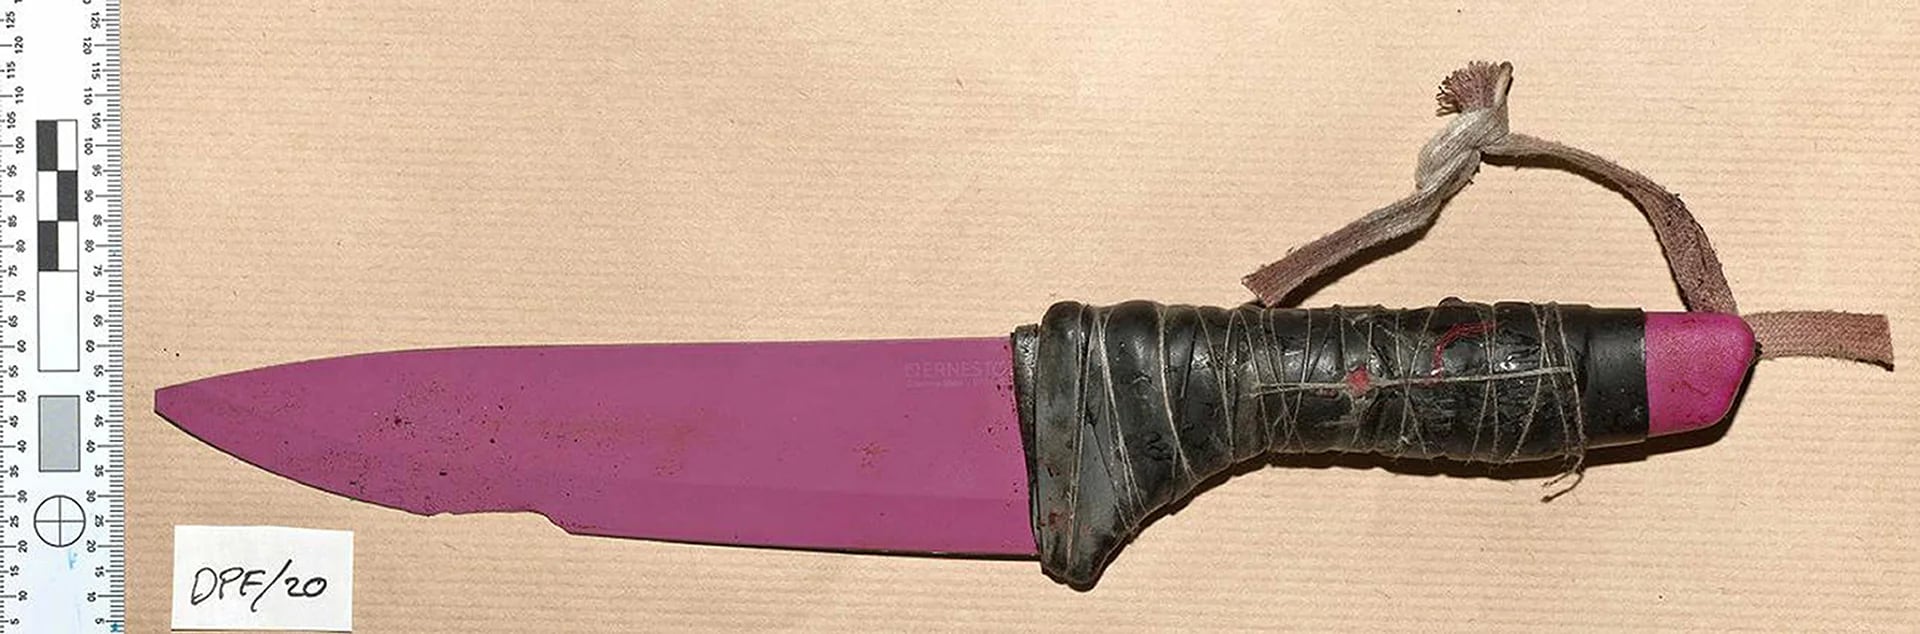 Los yihadistas usaron cuchillos de cerámica de 30 centímetros